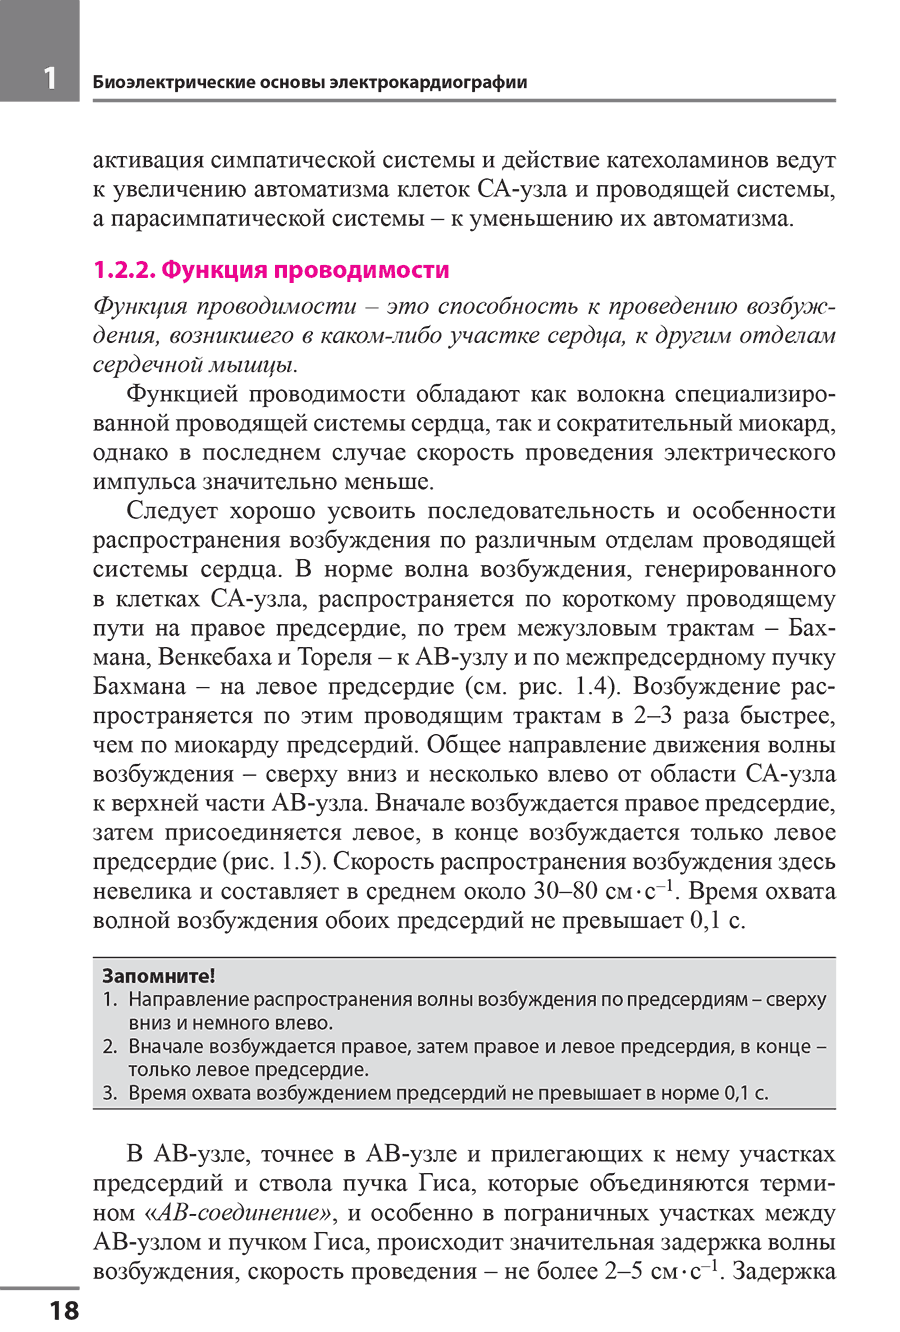 Пример страницы из книги "Электрокардиография" - Мурашко В. В., Струтынский А. В.